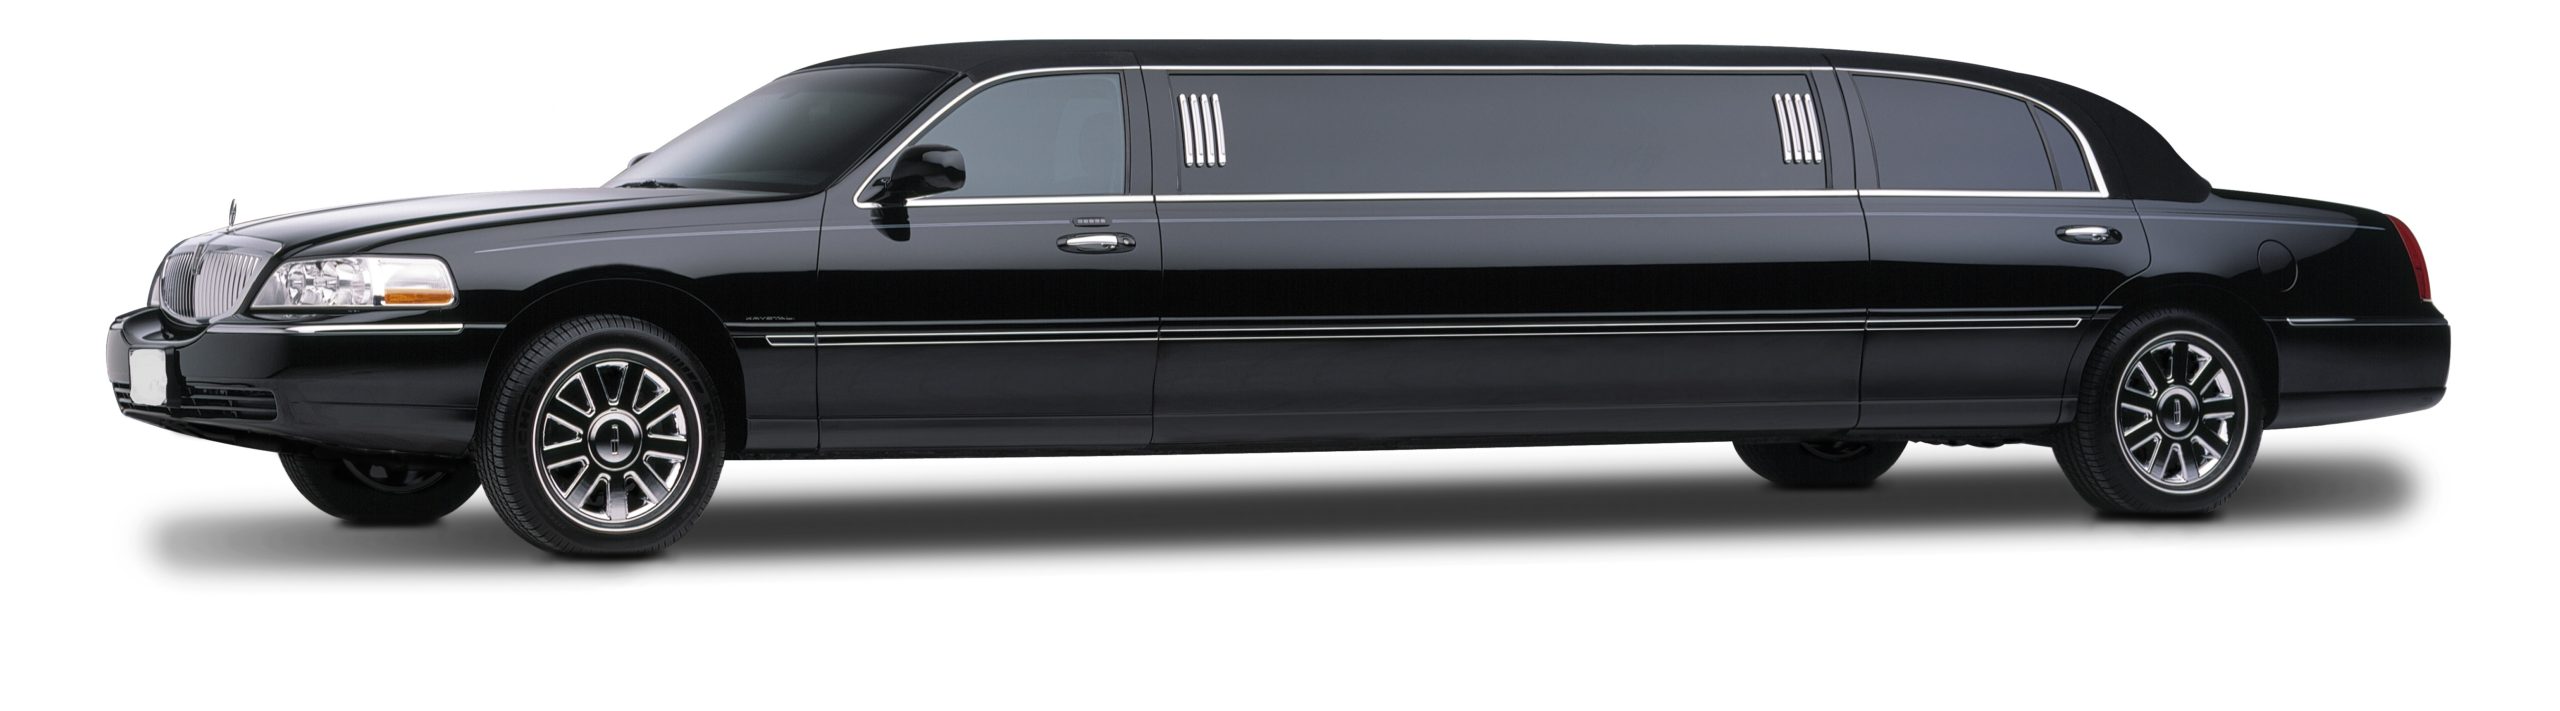 Empire_limousine_10_passenger.jpg